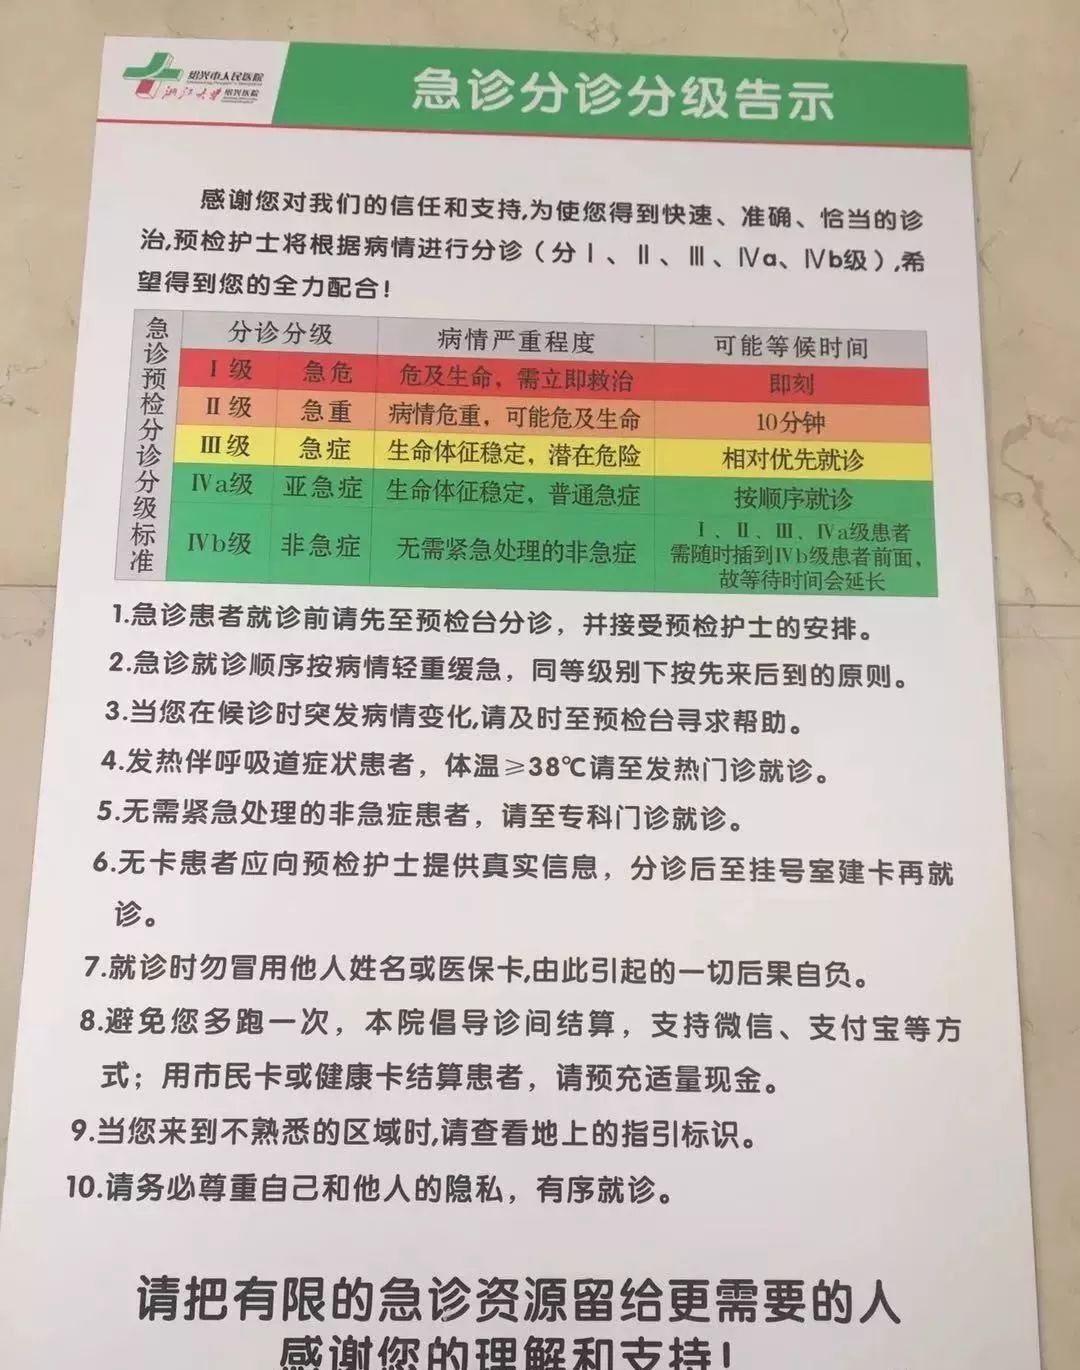 自23日开始,绍兴市人民医院实行急诊预检分诊分级就诊